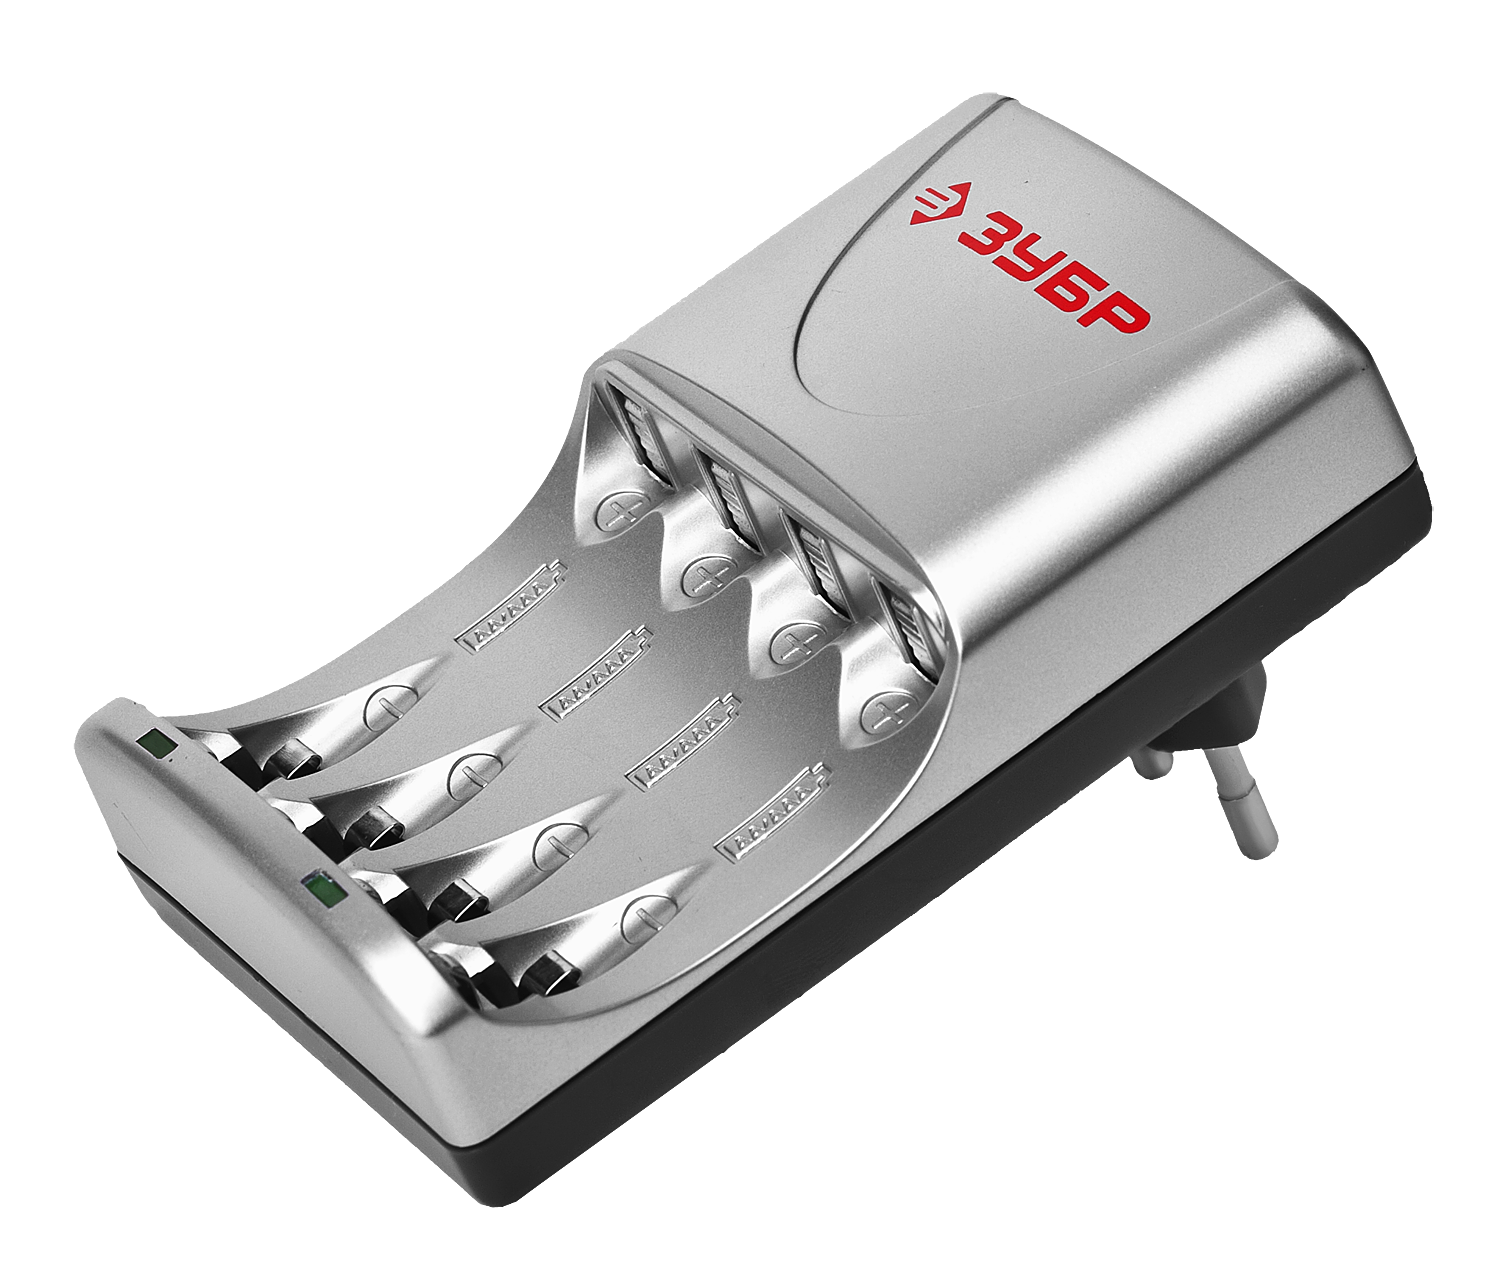 Зарядное устройство ЗУБР для никель-металлгидридных аккумуляторов, в блистере, время зарядки 1 час, 2хААА/АА